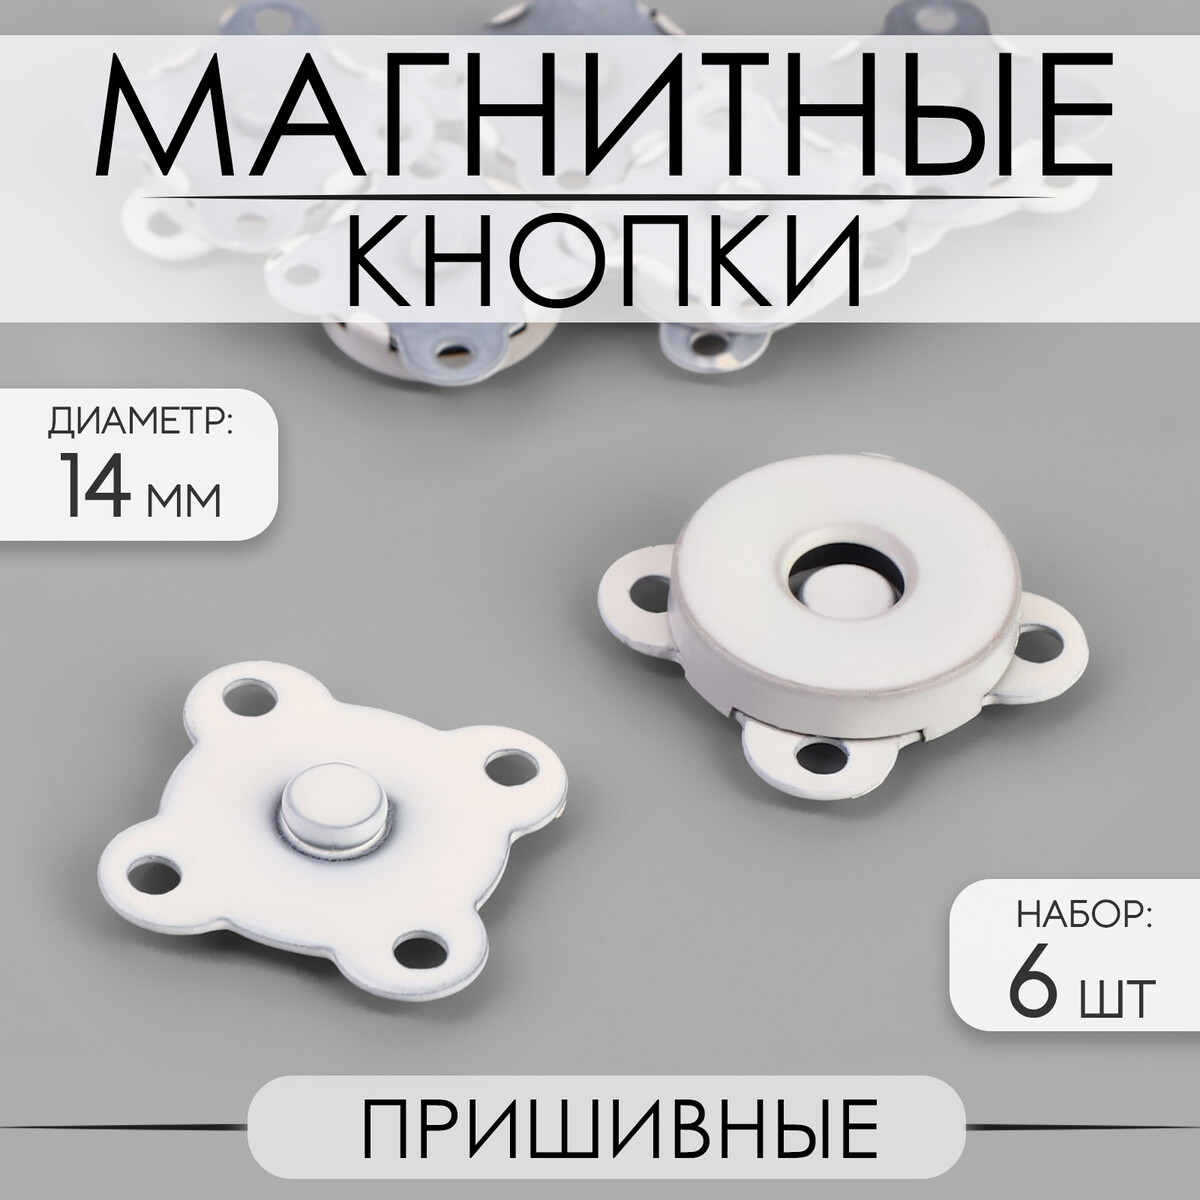 Кнопки магнитные, пришивные, d = 14 мм, 6 шт, цвет белый матовый